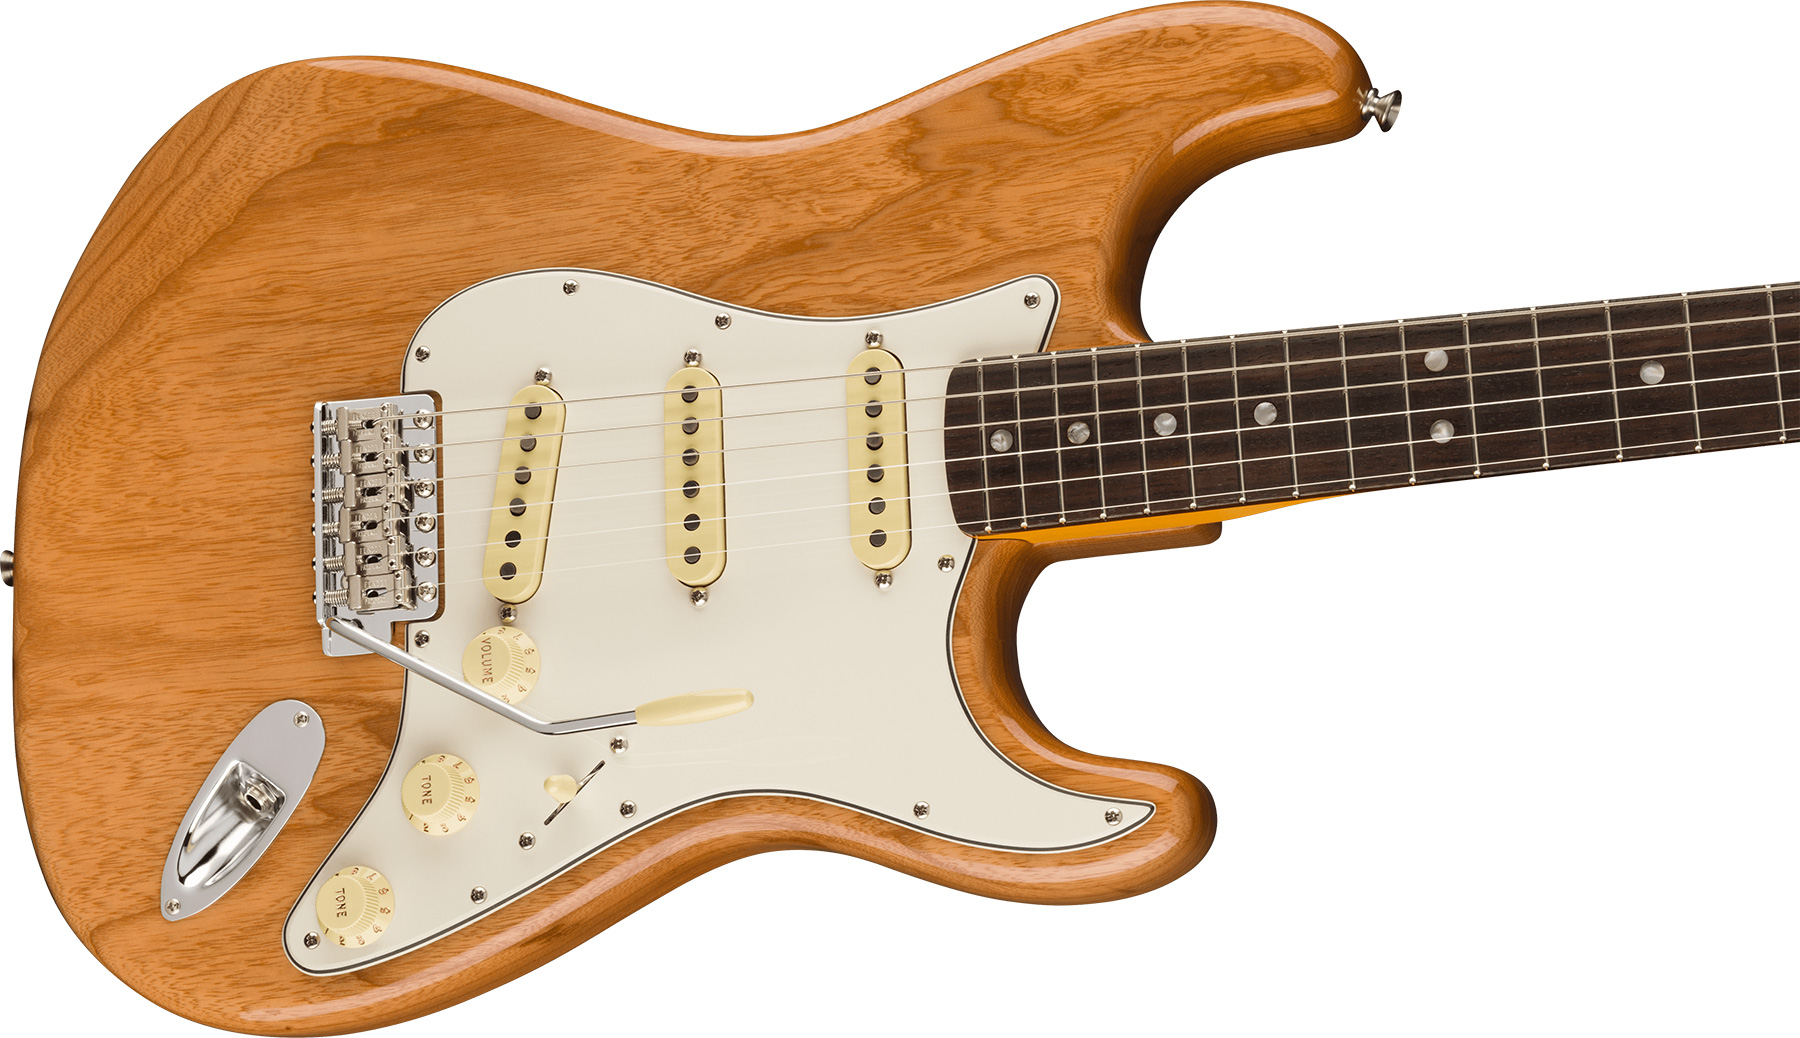 Fender Strat 1973 American Vintage Ii Usa 3s Trem Rw - Aged Natural - E-Gitarre in Str-Form - Variation 2